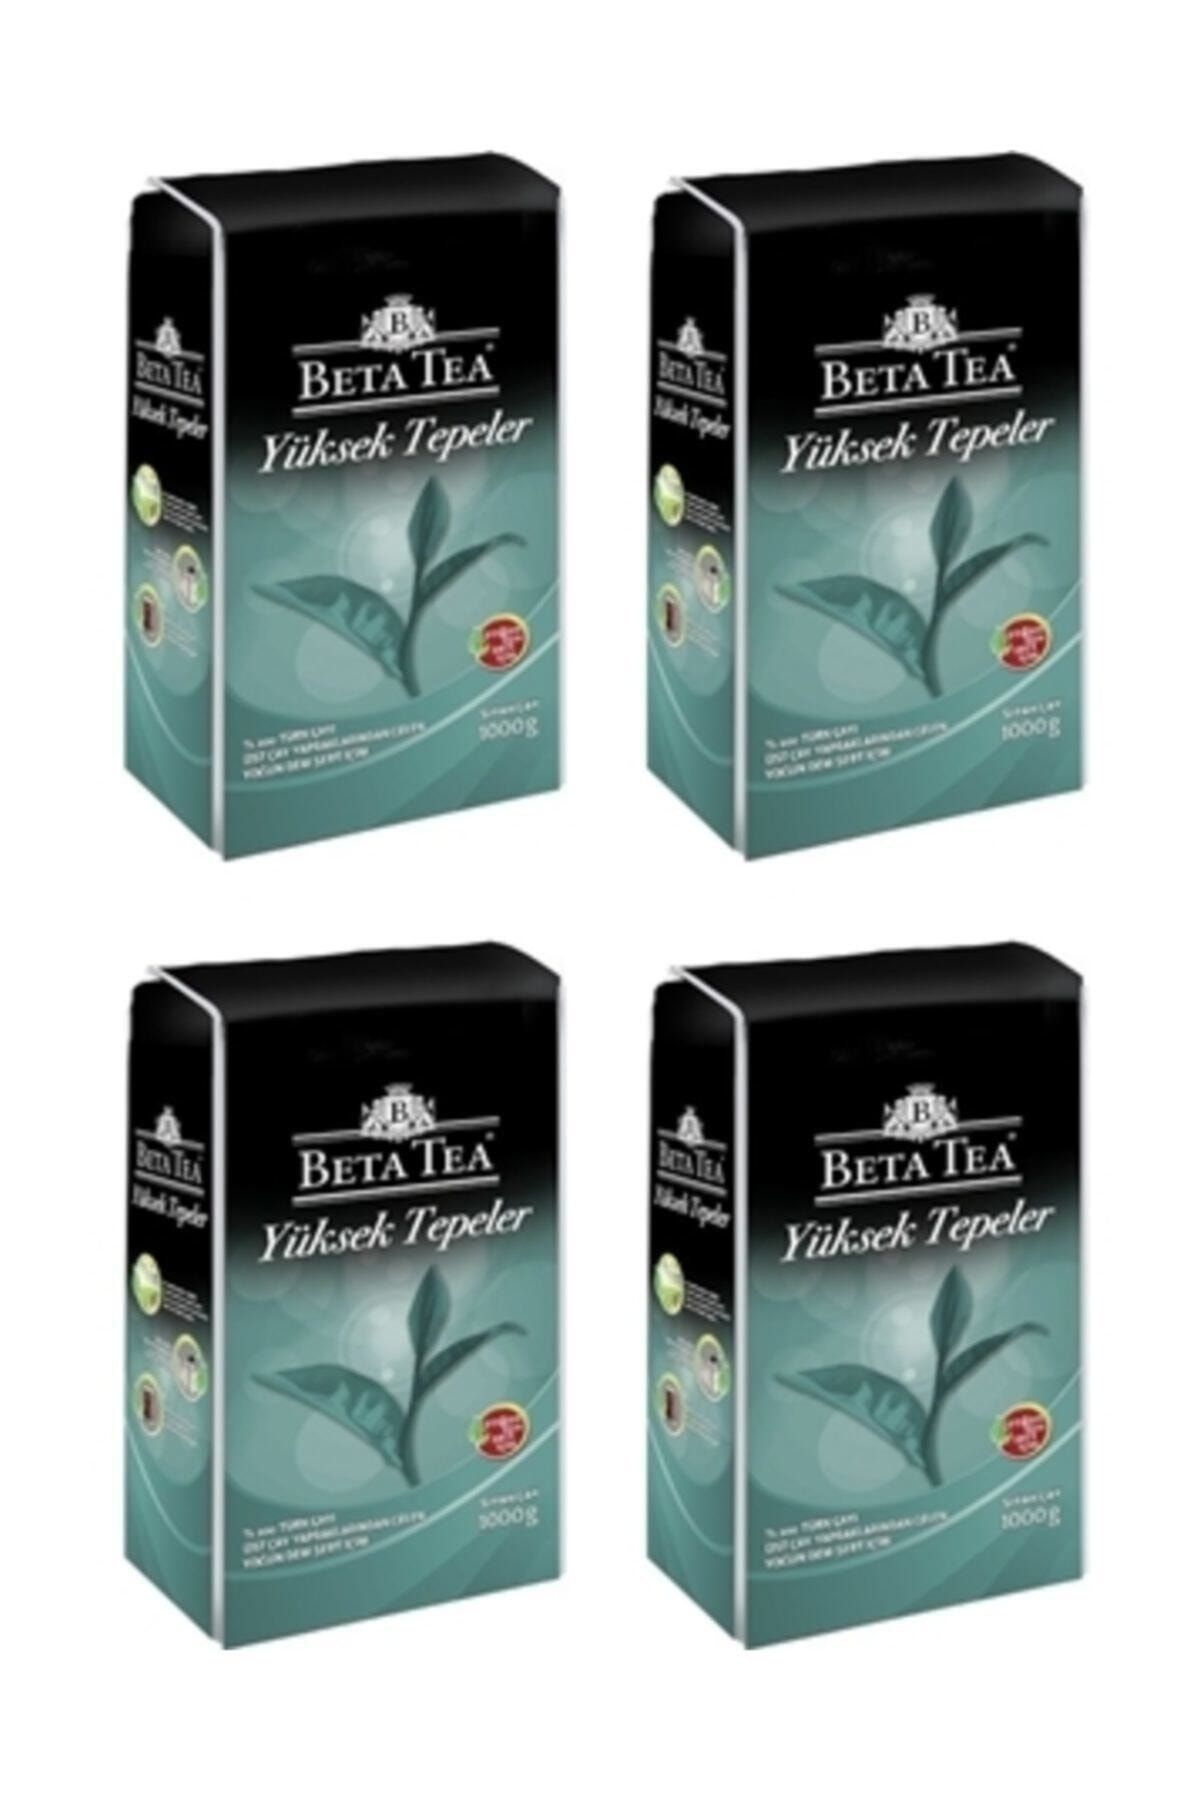 Beta Tea Yüksek Tepeler Dökme Çay 1 kg x 4 Adet